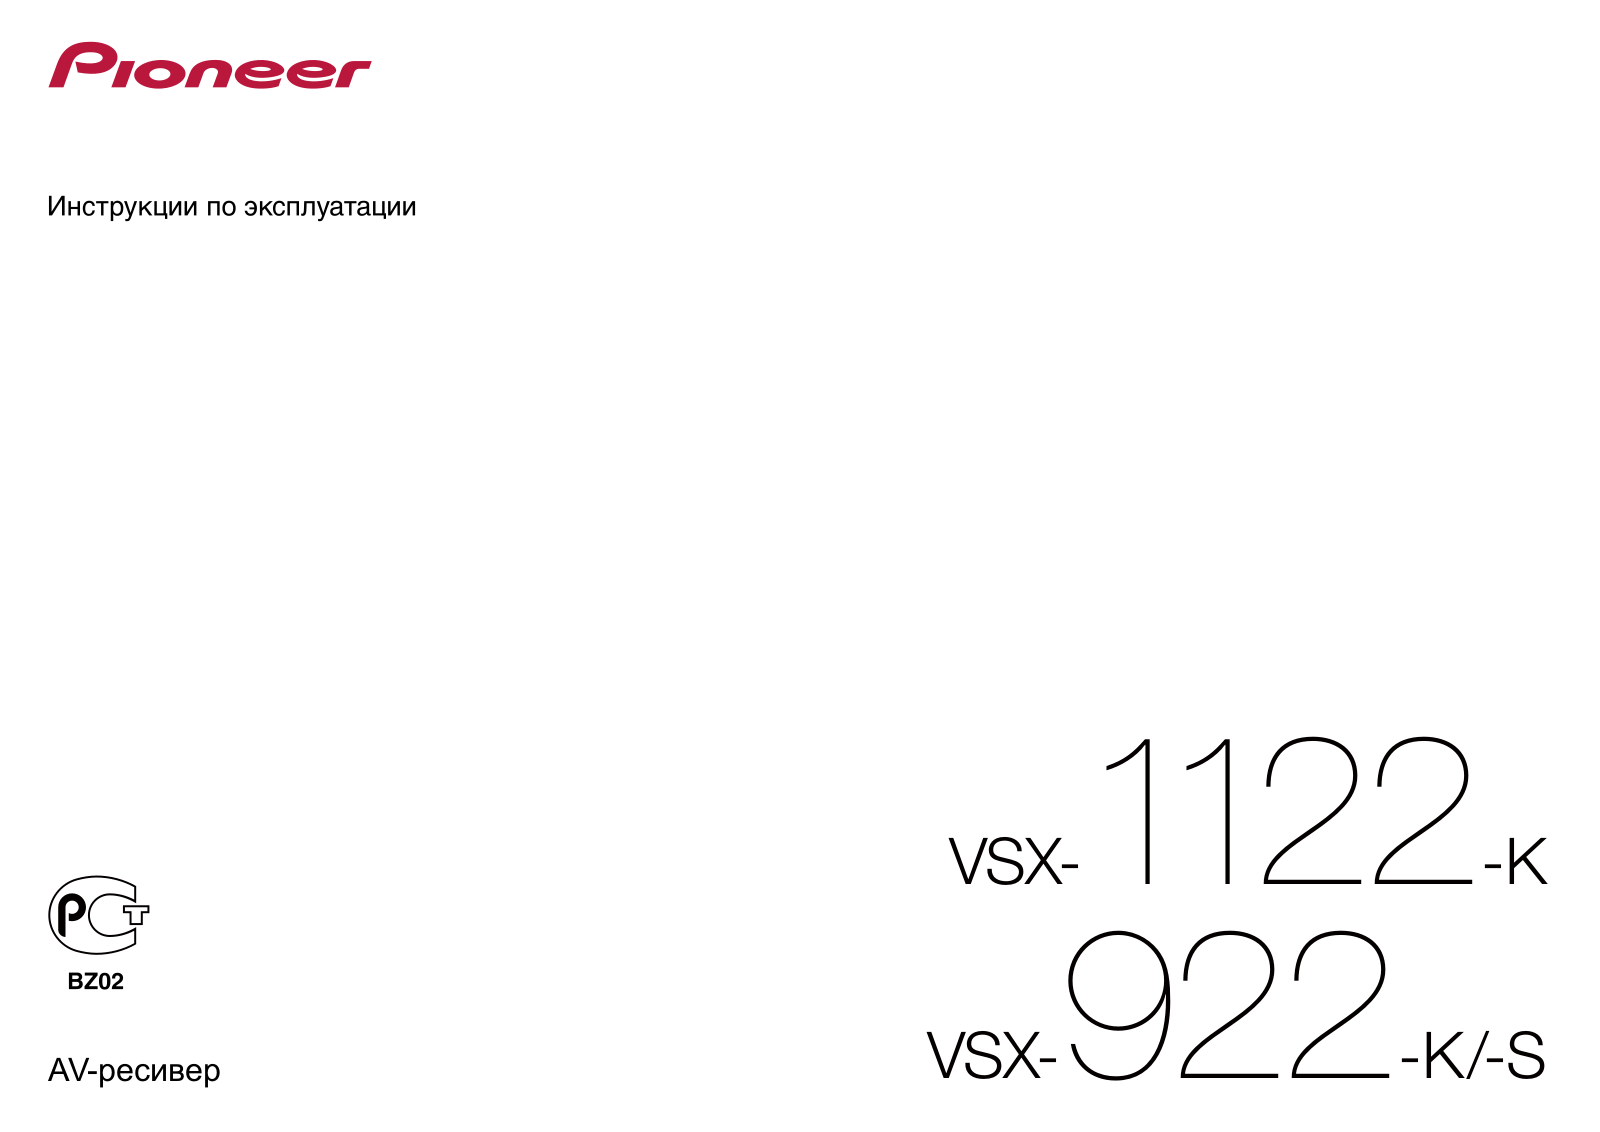 PIONEER VSX-922-K -S, VSX-1122-K User Manual